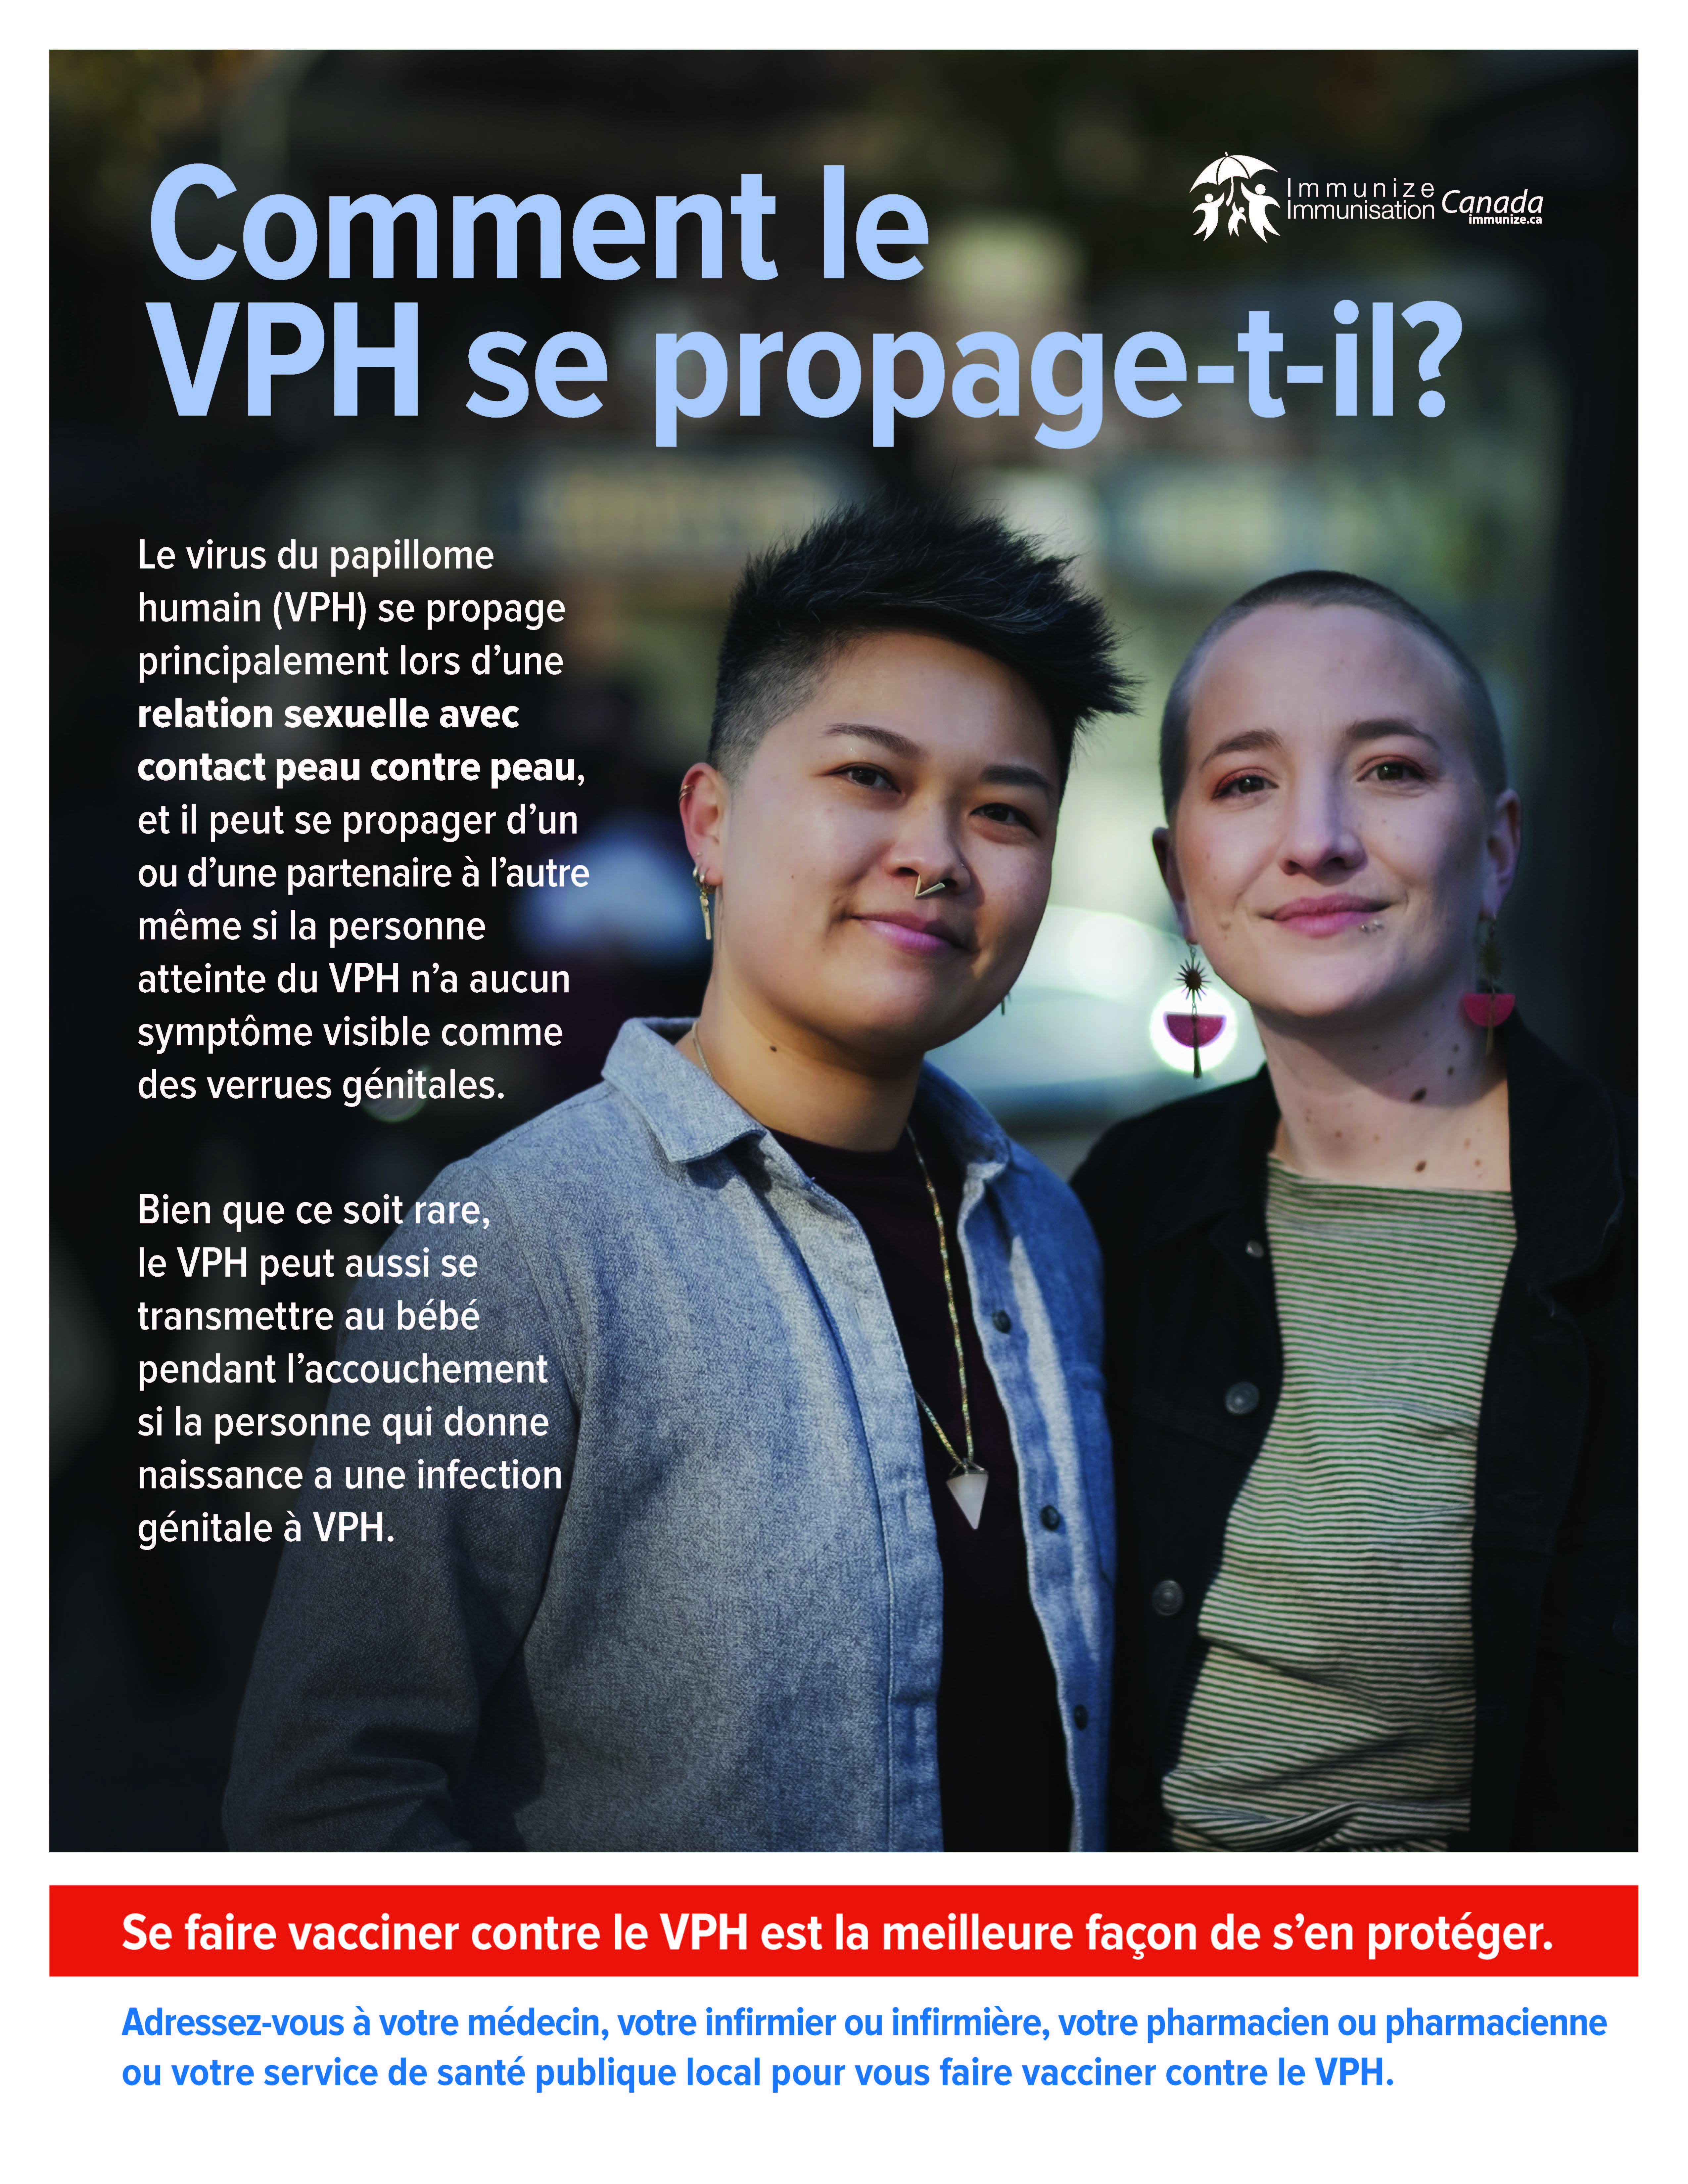 Comment le VPH se propage-t-il? (affiche)